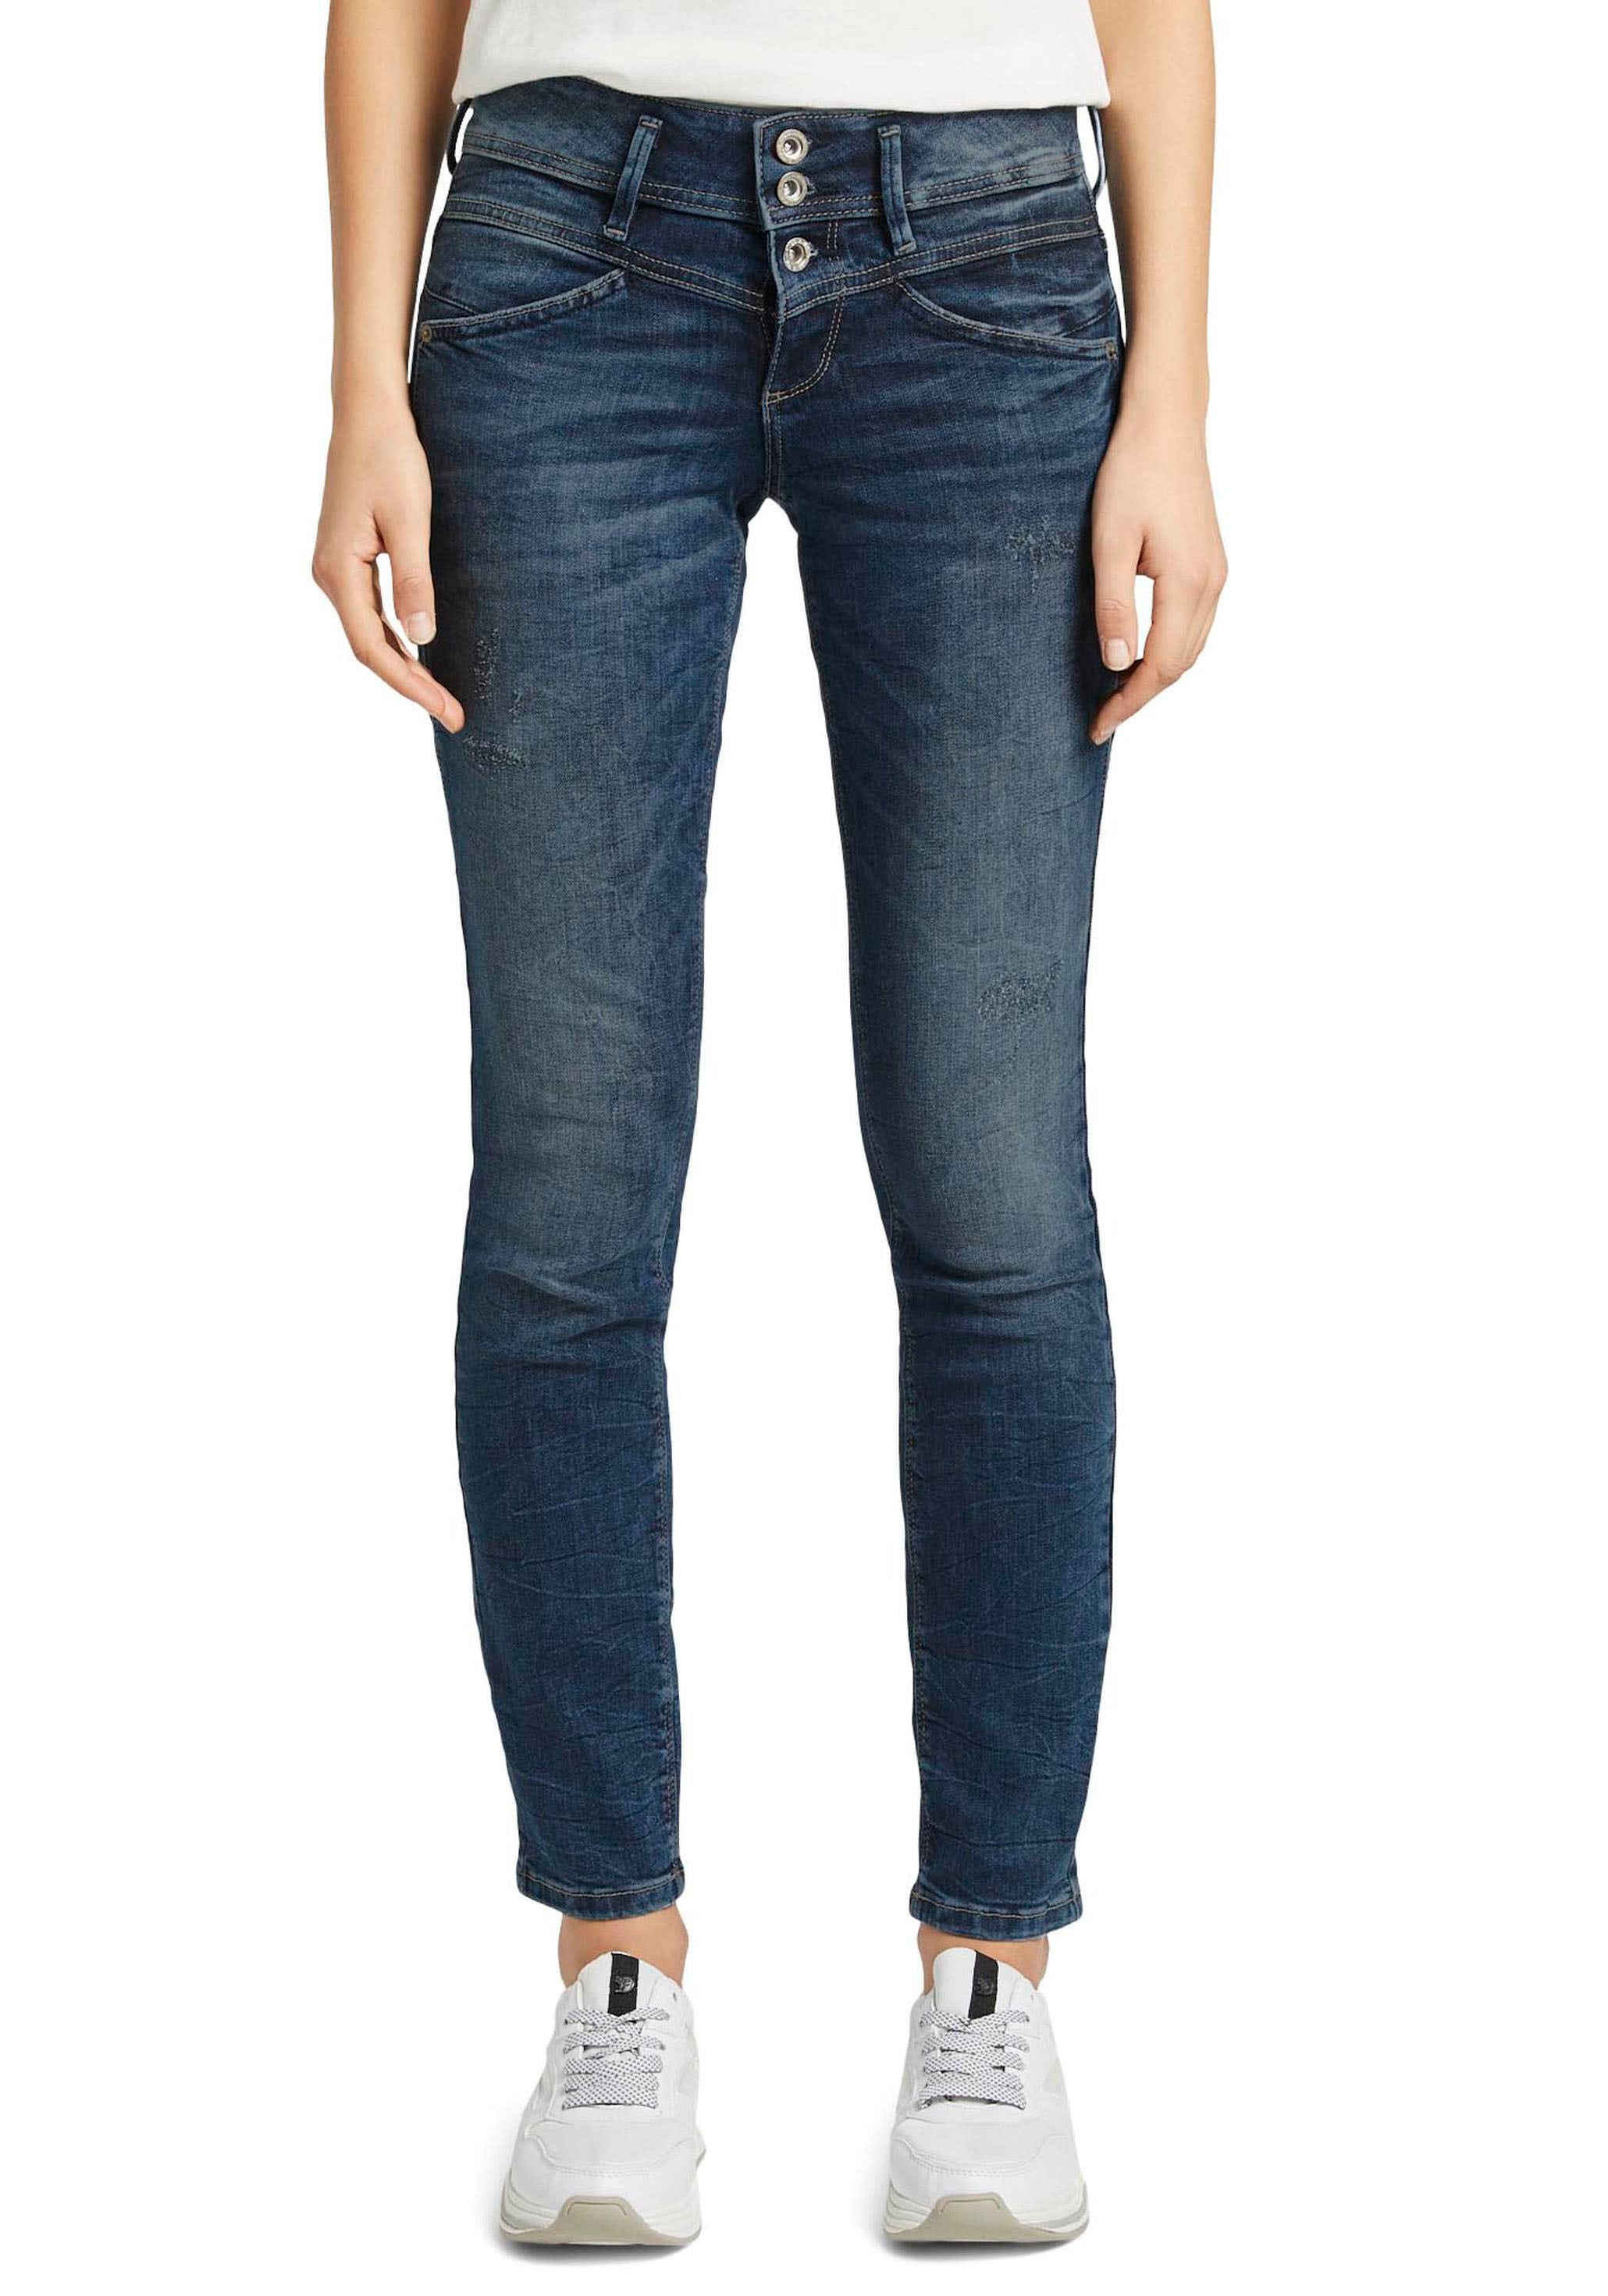 Damen Jeans große Größen jetzt online kaufen